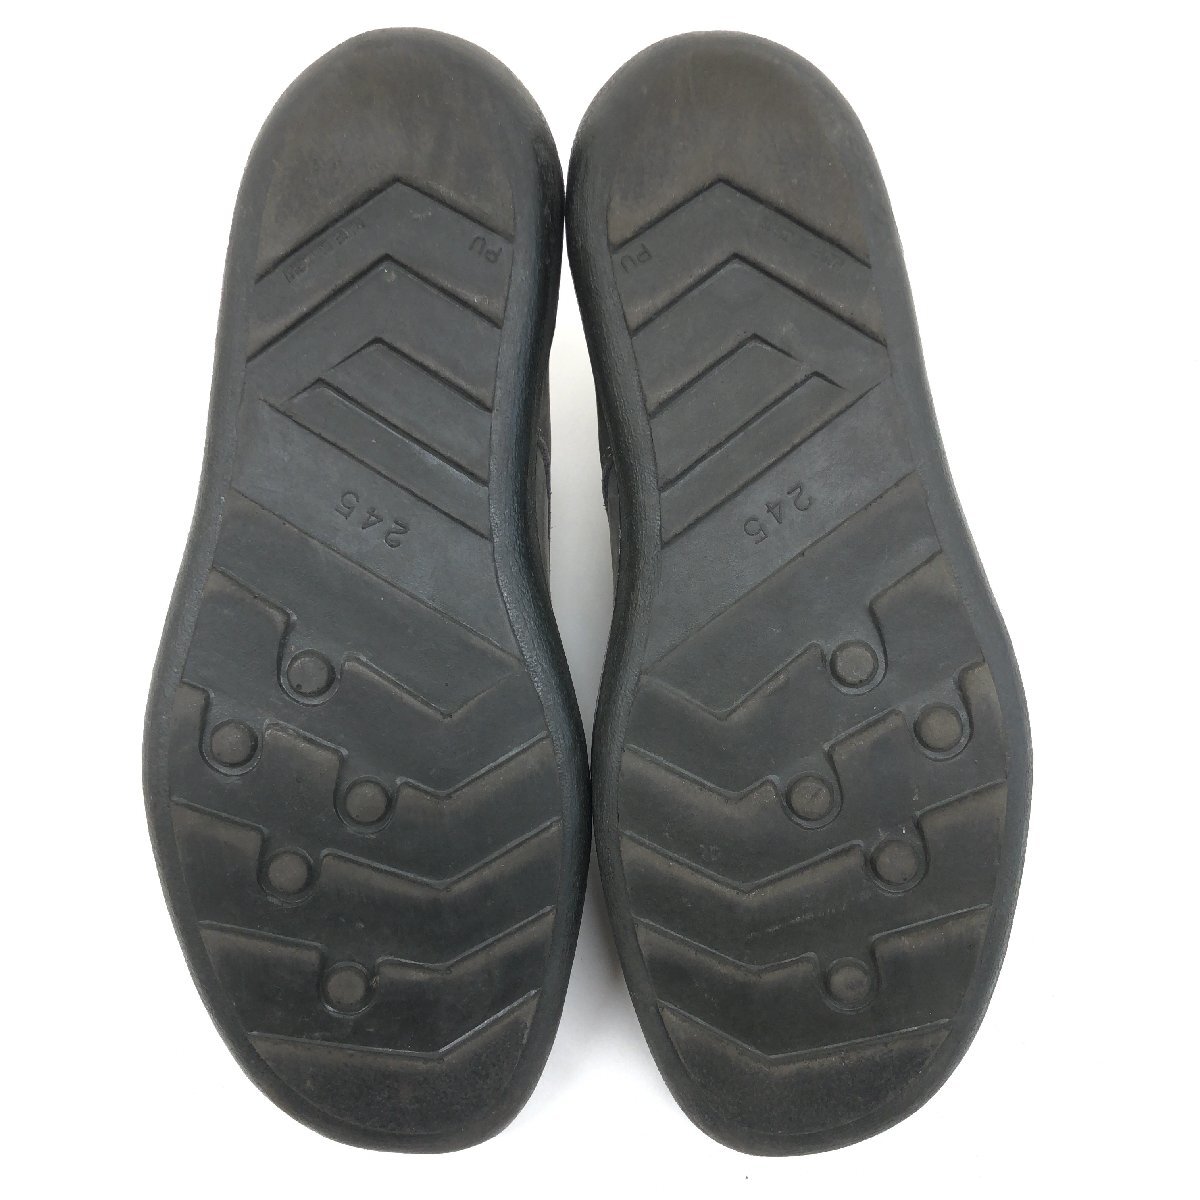 ●ARUKURUN アルクラン 牛革 ヌバックレザー ウォーキングシューズ 24.5cm グレー スニーカー コンフォート 革靴 健康靴 日本製 メンズの画像8